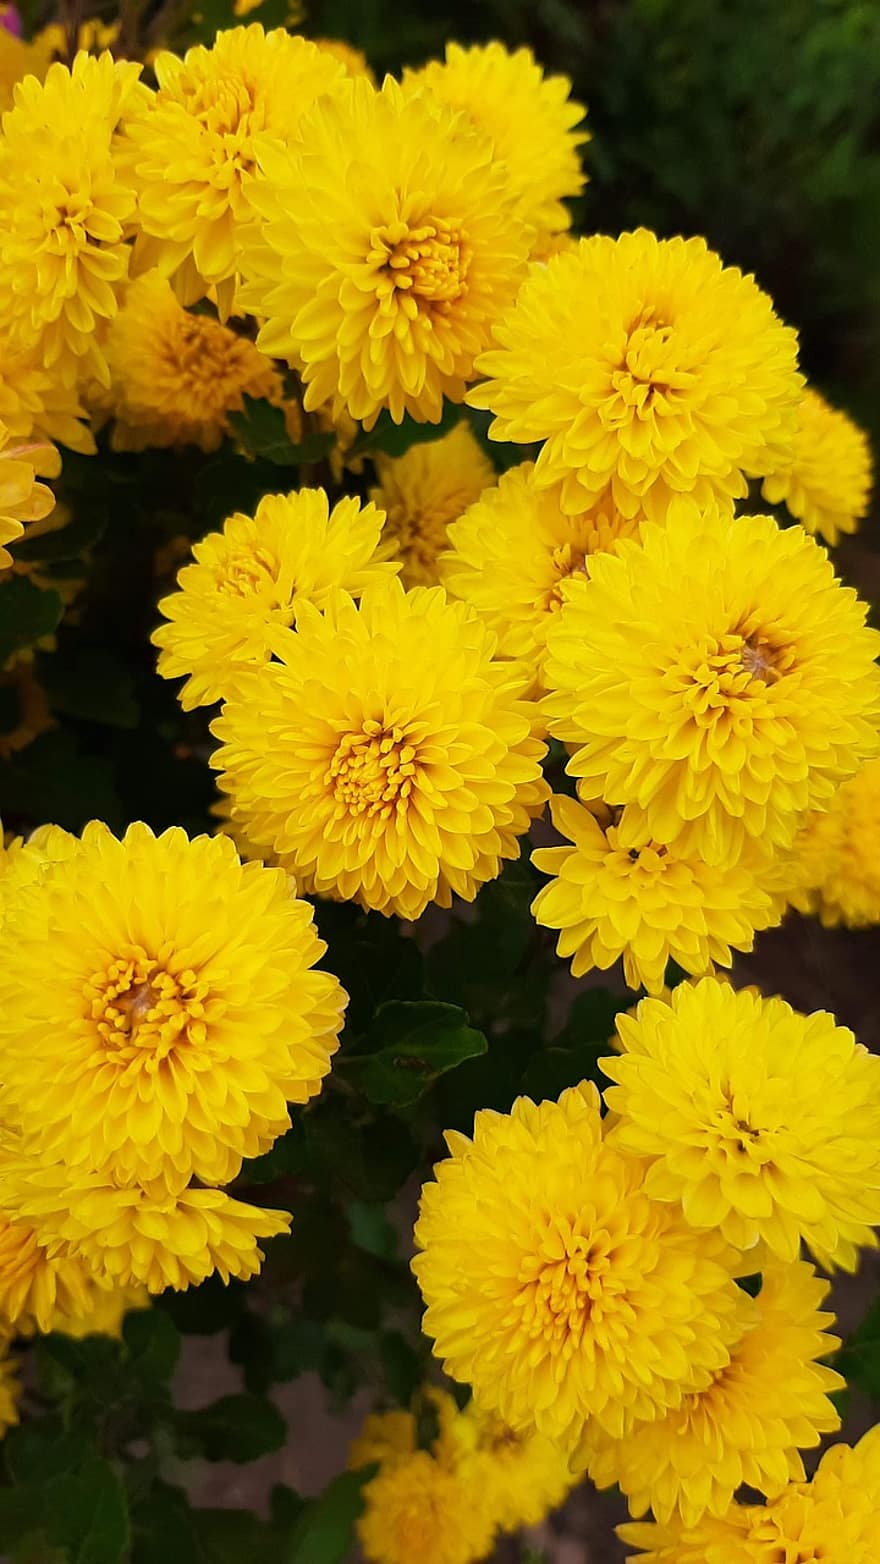 chrysant, bloemen, planten, gele bloemen, bloemblaadjes, bloeien, tuin-, natuur, geel, detailopname, zomer